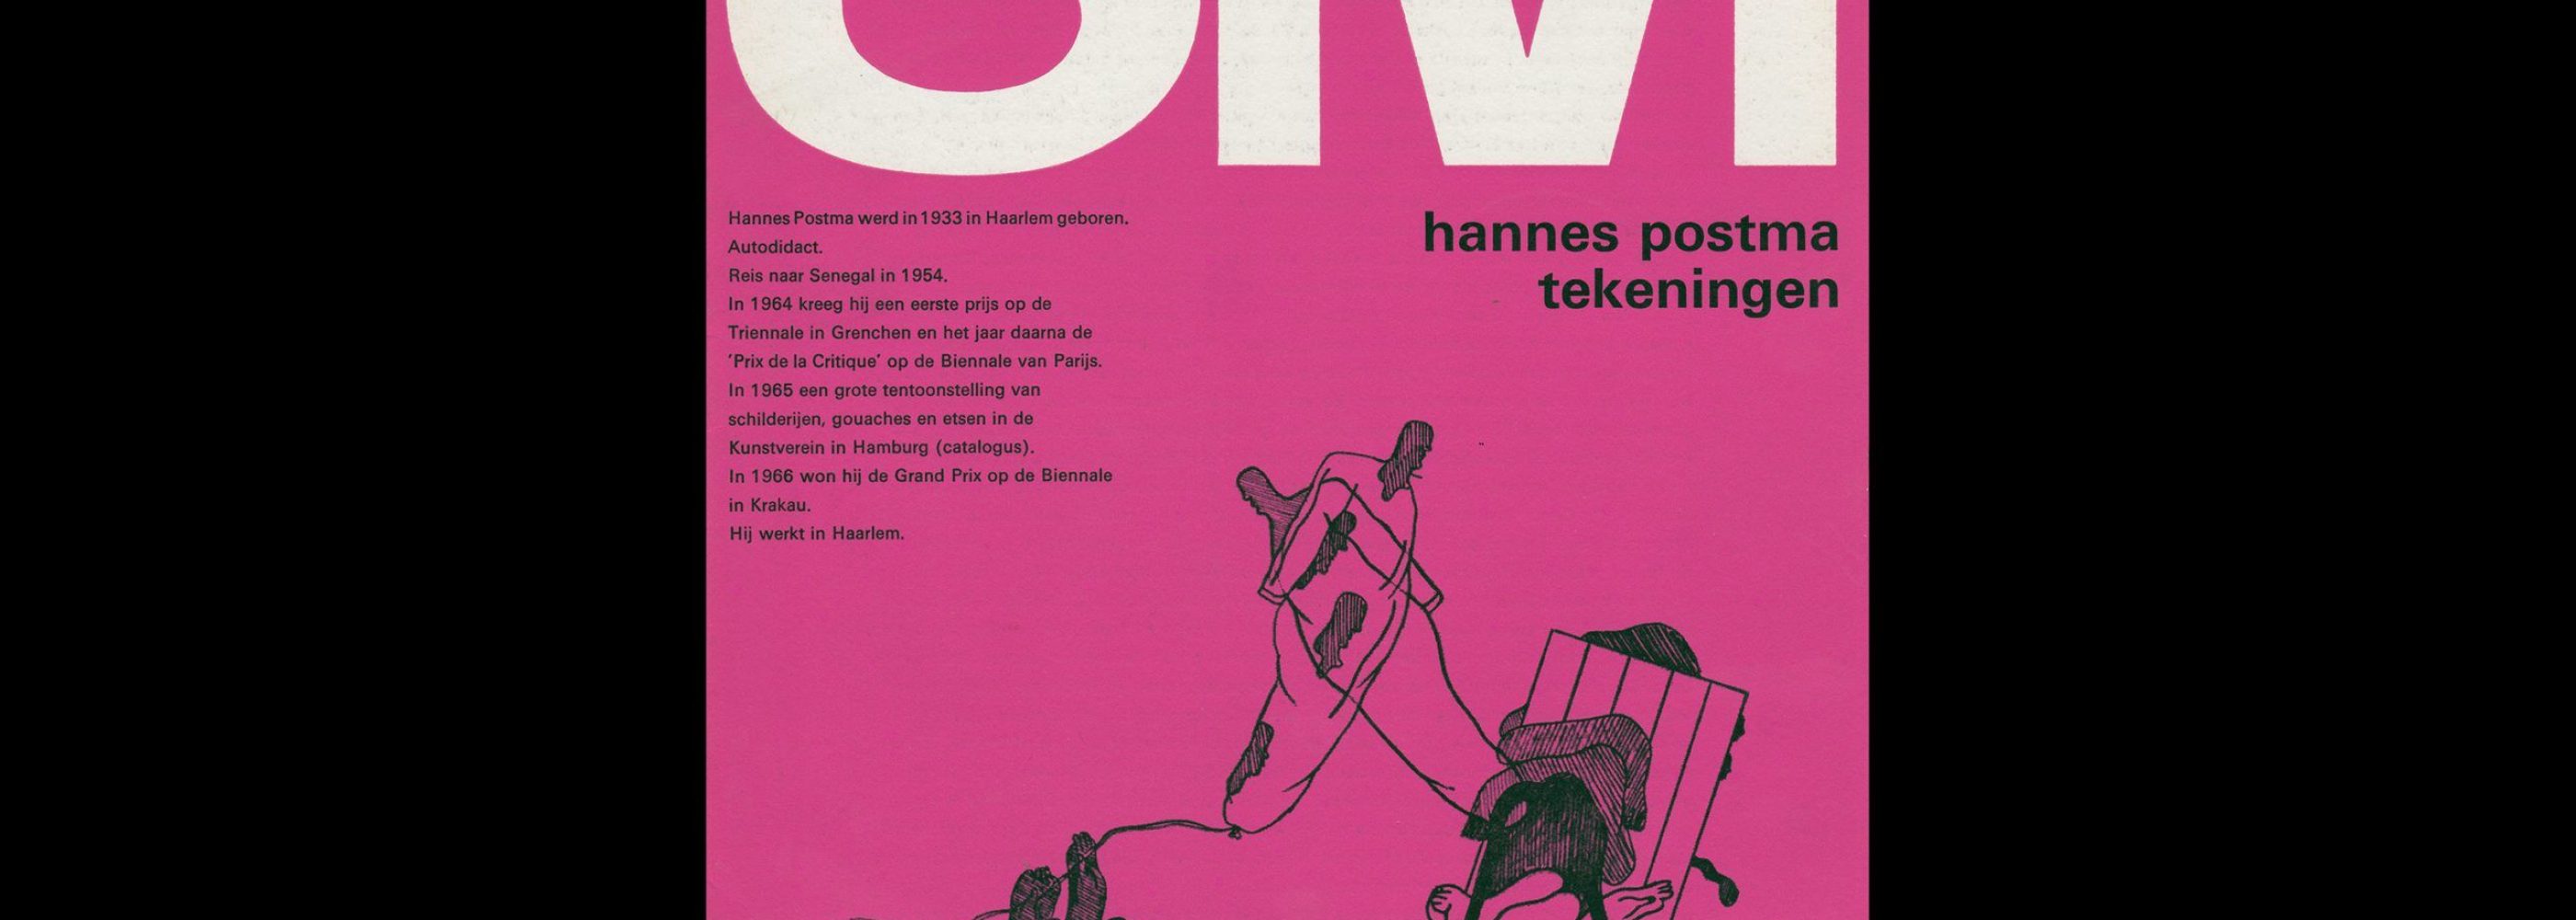 Hannes Postmas Tekeningen, Stedelijk Museum, Amsterdam, 1967 designed by Wim Crouwel